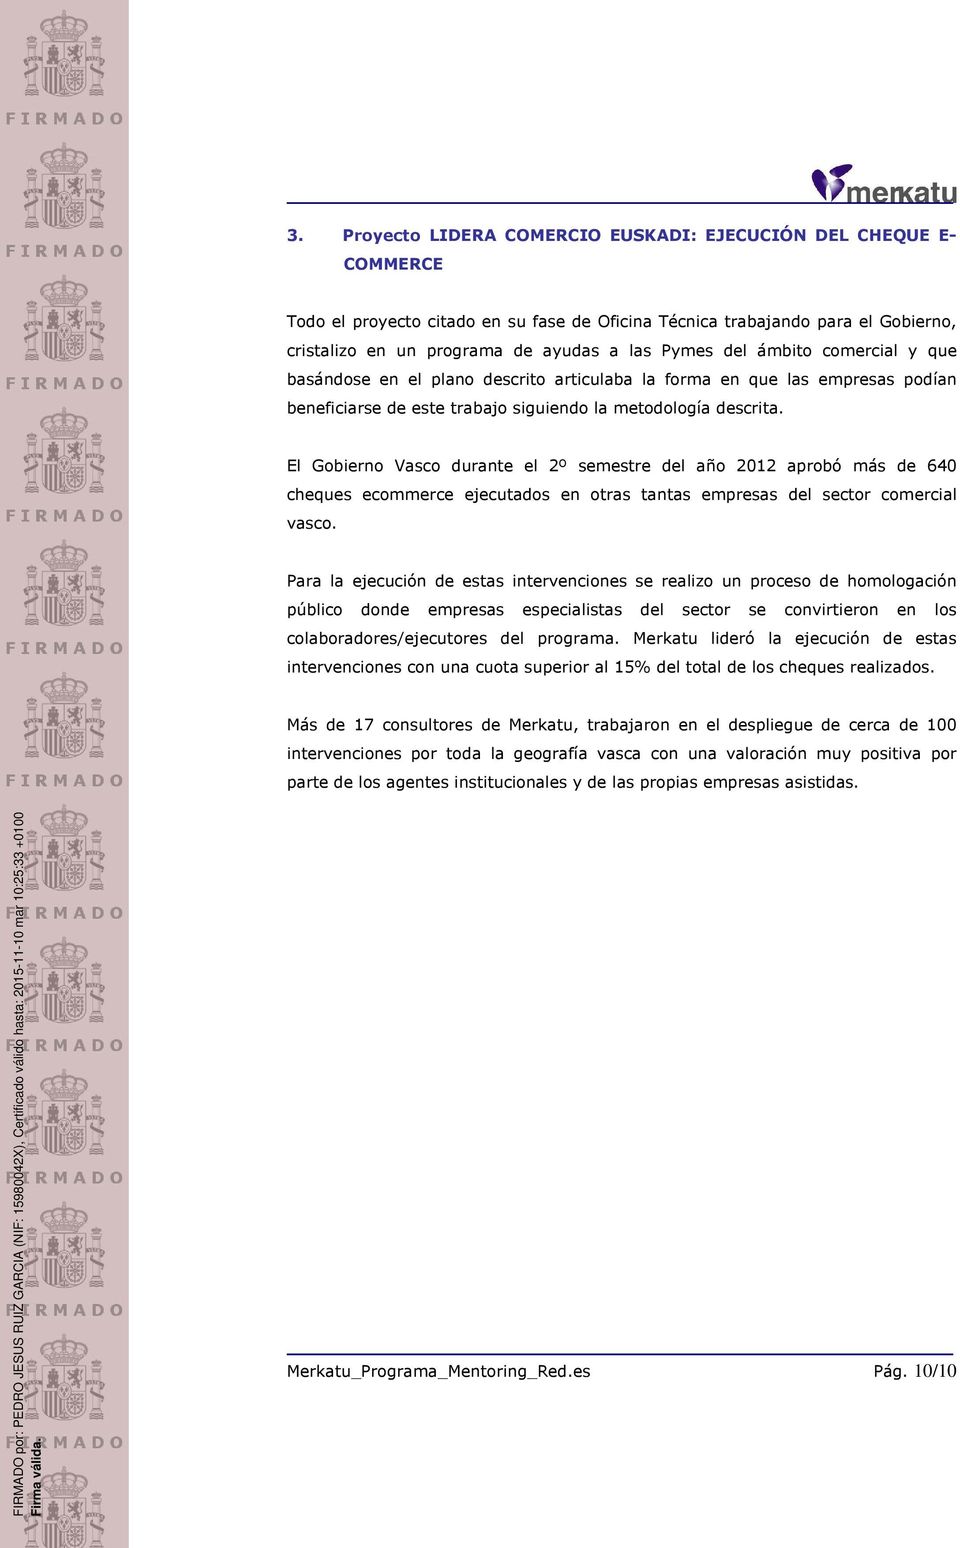 El Gobierno Vasco durante el 2º semestre del año 2012 aprobó más de 640 cheques ecommerce ejecutados en otras tantas empresas del sector comercial vasco.